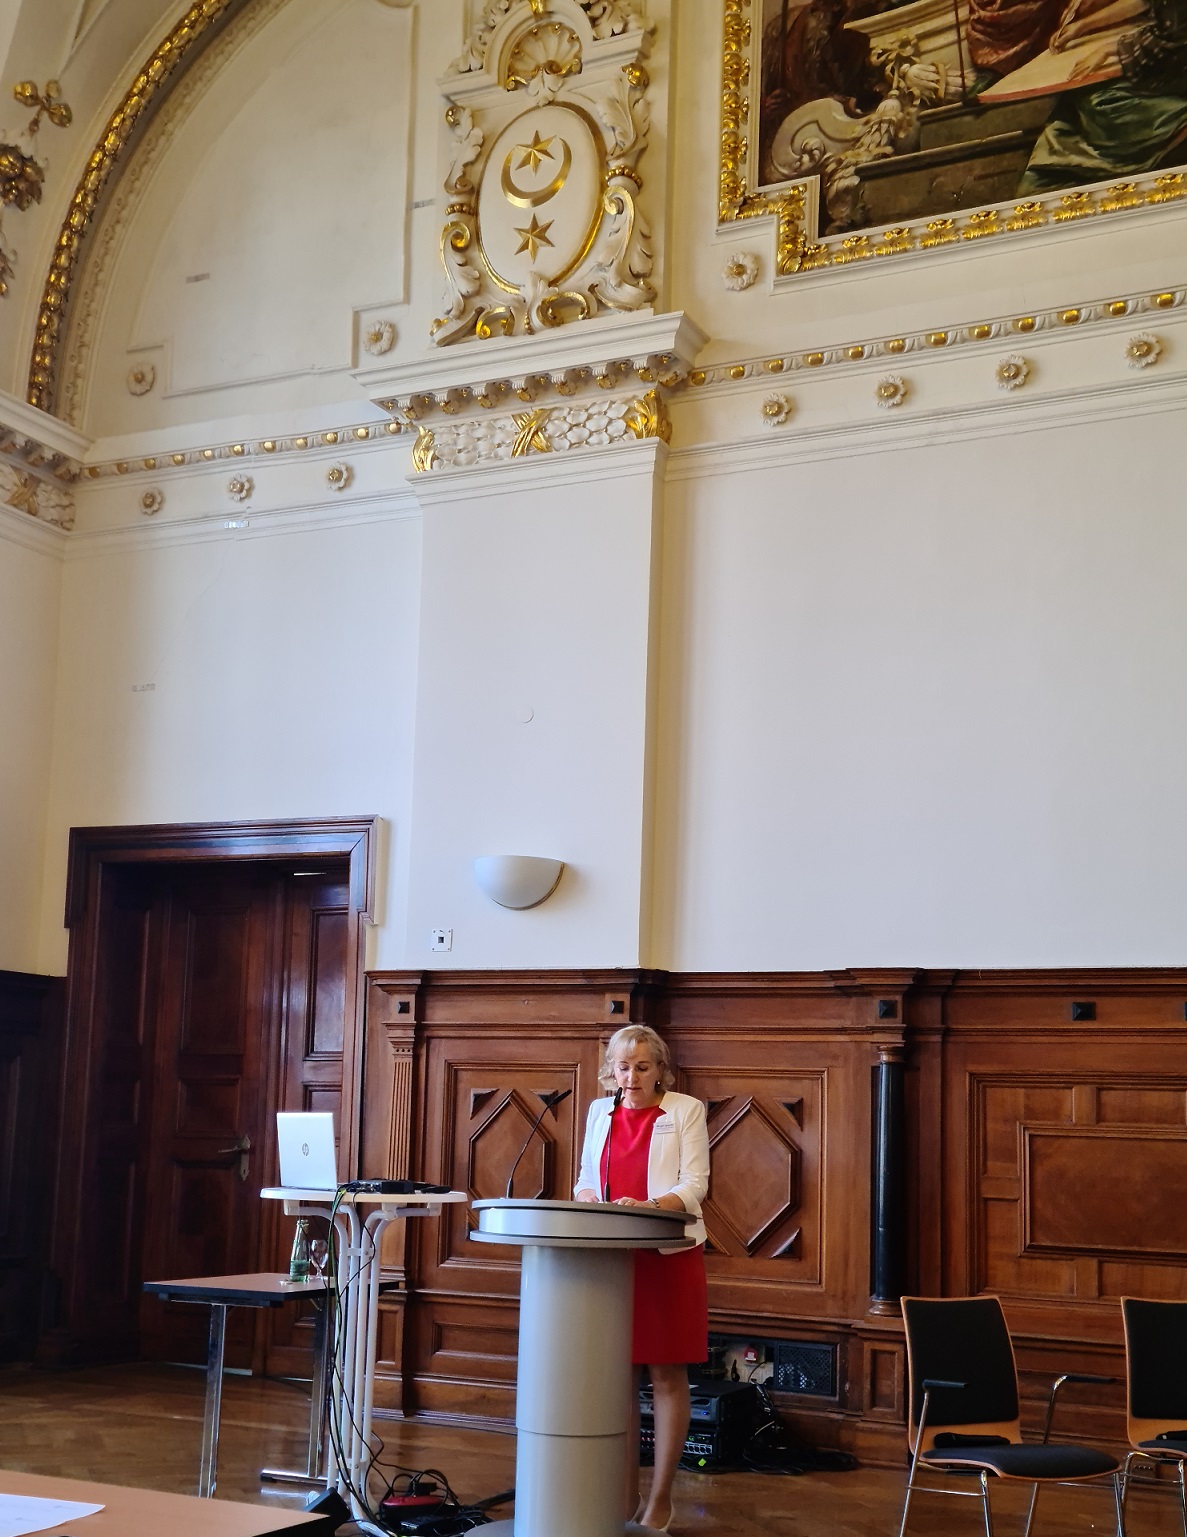 Grußwort der Direktorin des LKA Sachsen- Anhalt Birgit Specht, die dabei die Herausforderungen im Kampf gegen Cyberkriminalität und die Bedeutung der Vernetzung von Wissenschaft und Gesellschaft ansprach